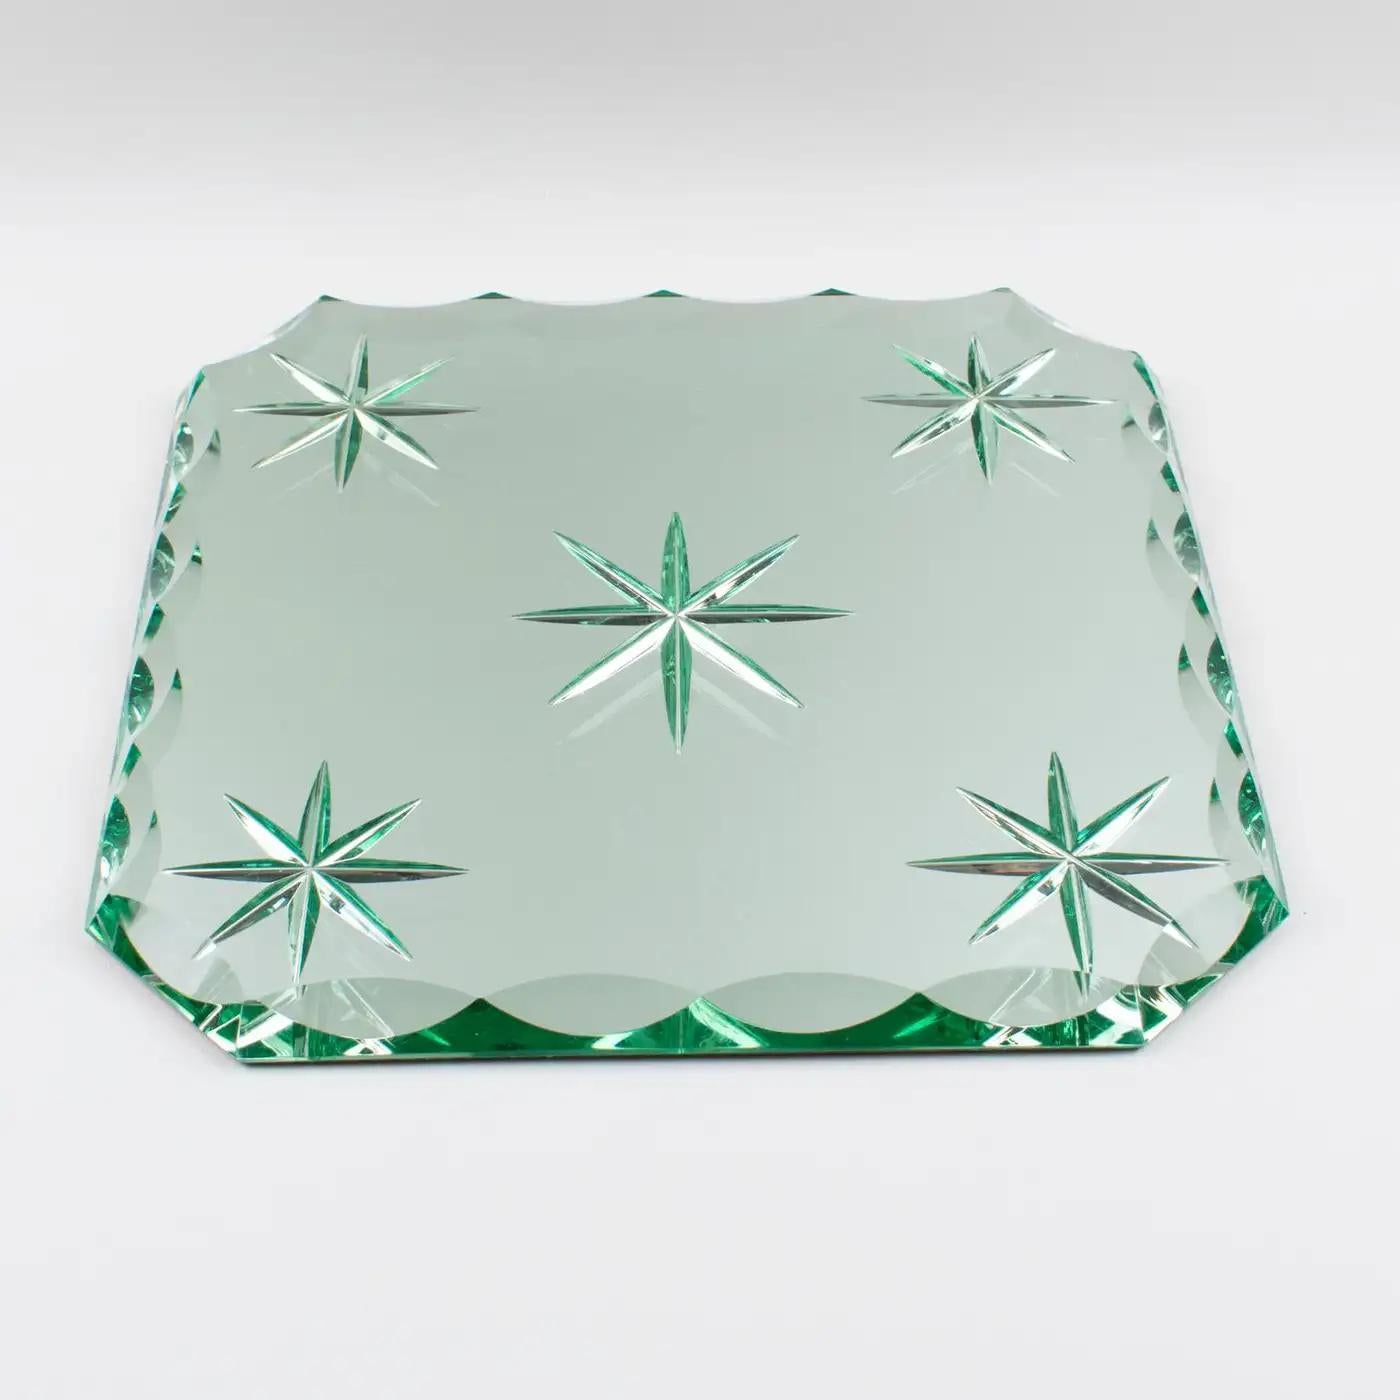 Le designer français Jean Luce (1895-1964) a créé ce ravissant plateau, centre de table ou plat en miroir de style Art déco. La dalle de verre miroir extra-épaisse a une forme carrée avec un motif gravé en étoile au centre, et les quatre angles et